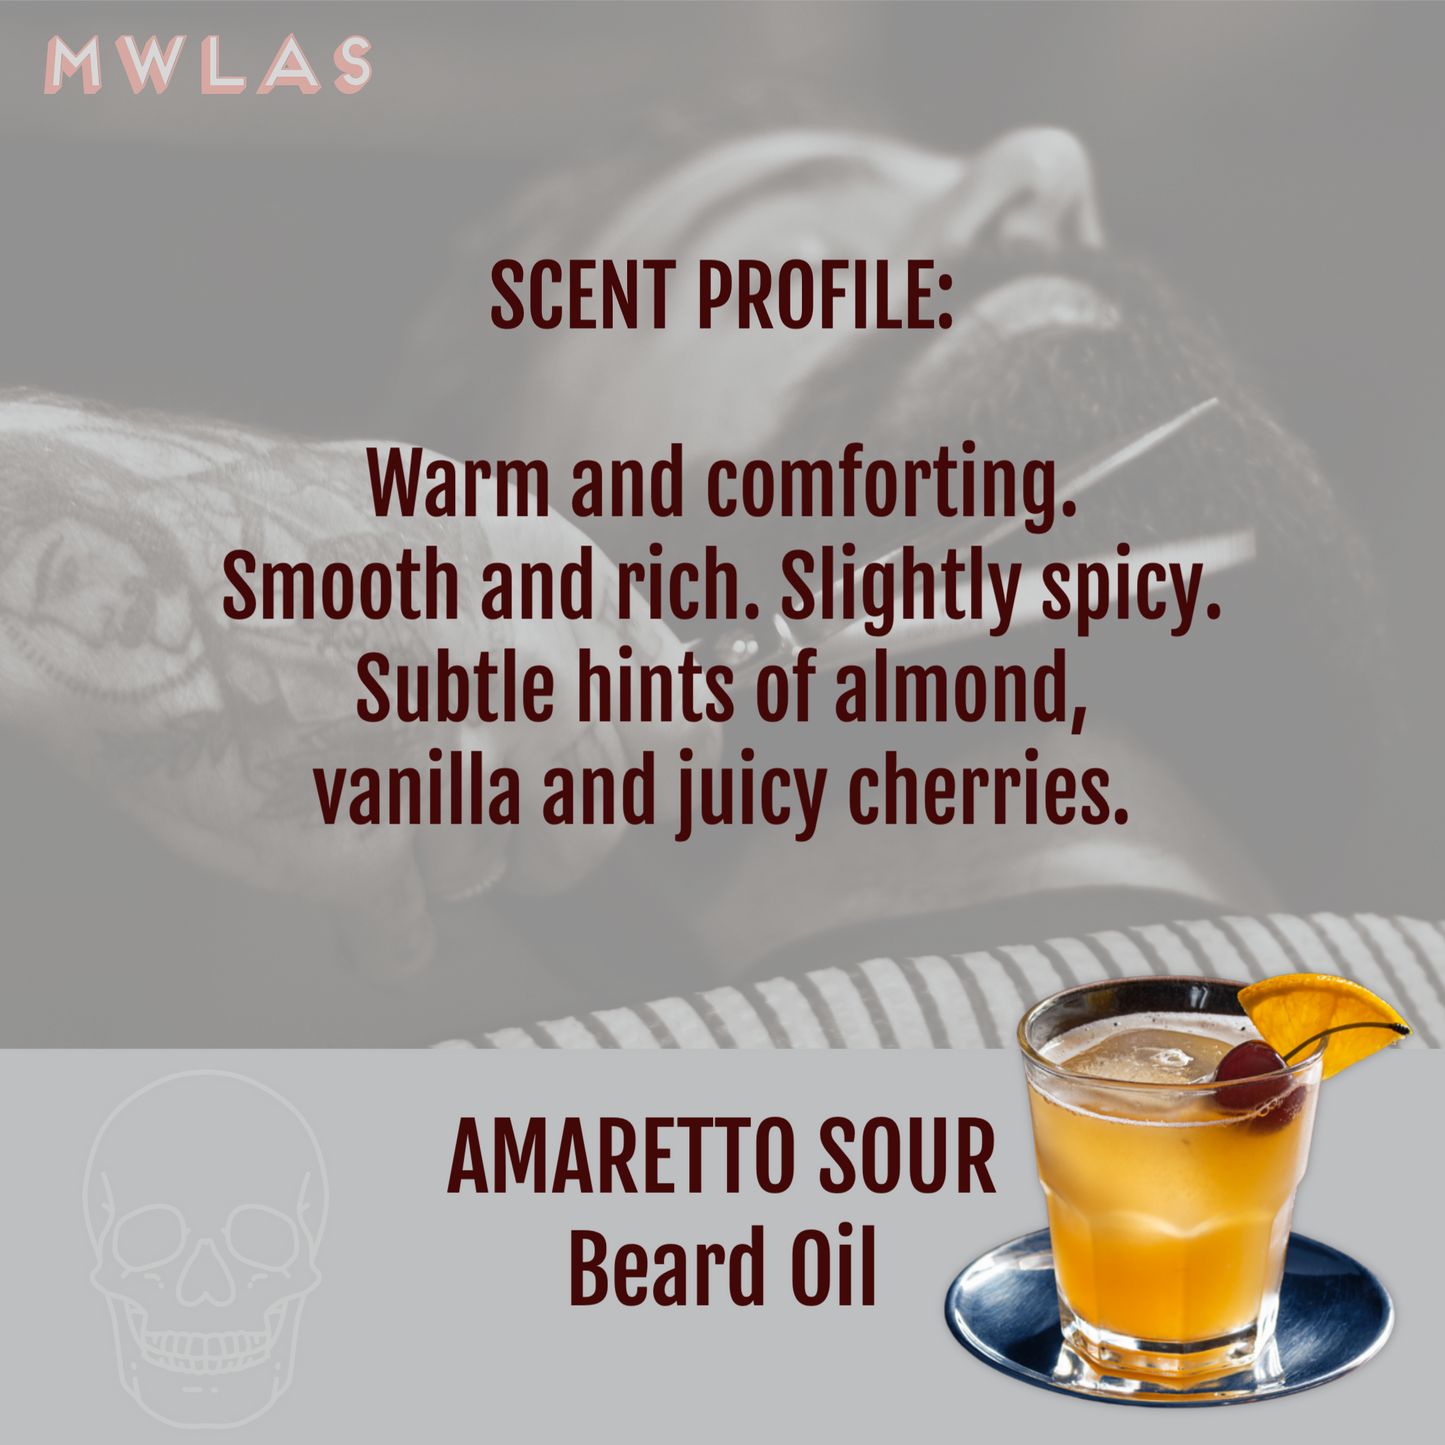 AMARETTO SOUR Beard Oil